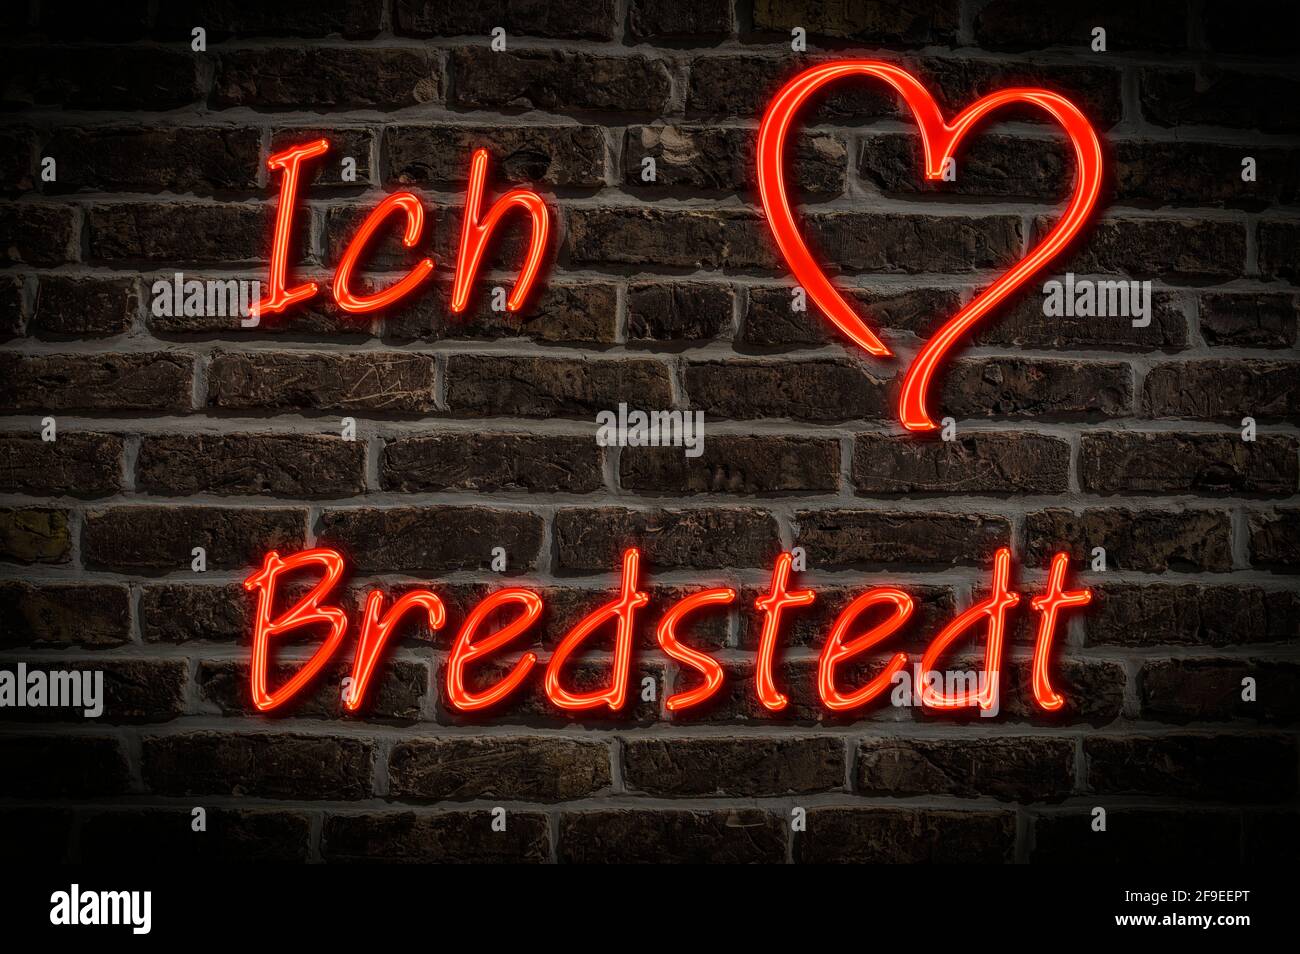 Leuchtreklame, Ich liebe Bredstedt, Schleswig-Holstein, Deutschland, Europa | Illuminated advertising, I love Bredstedt, Schleswig-Holstein, Germany, Stock Photo